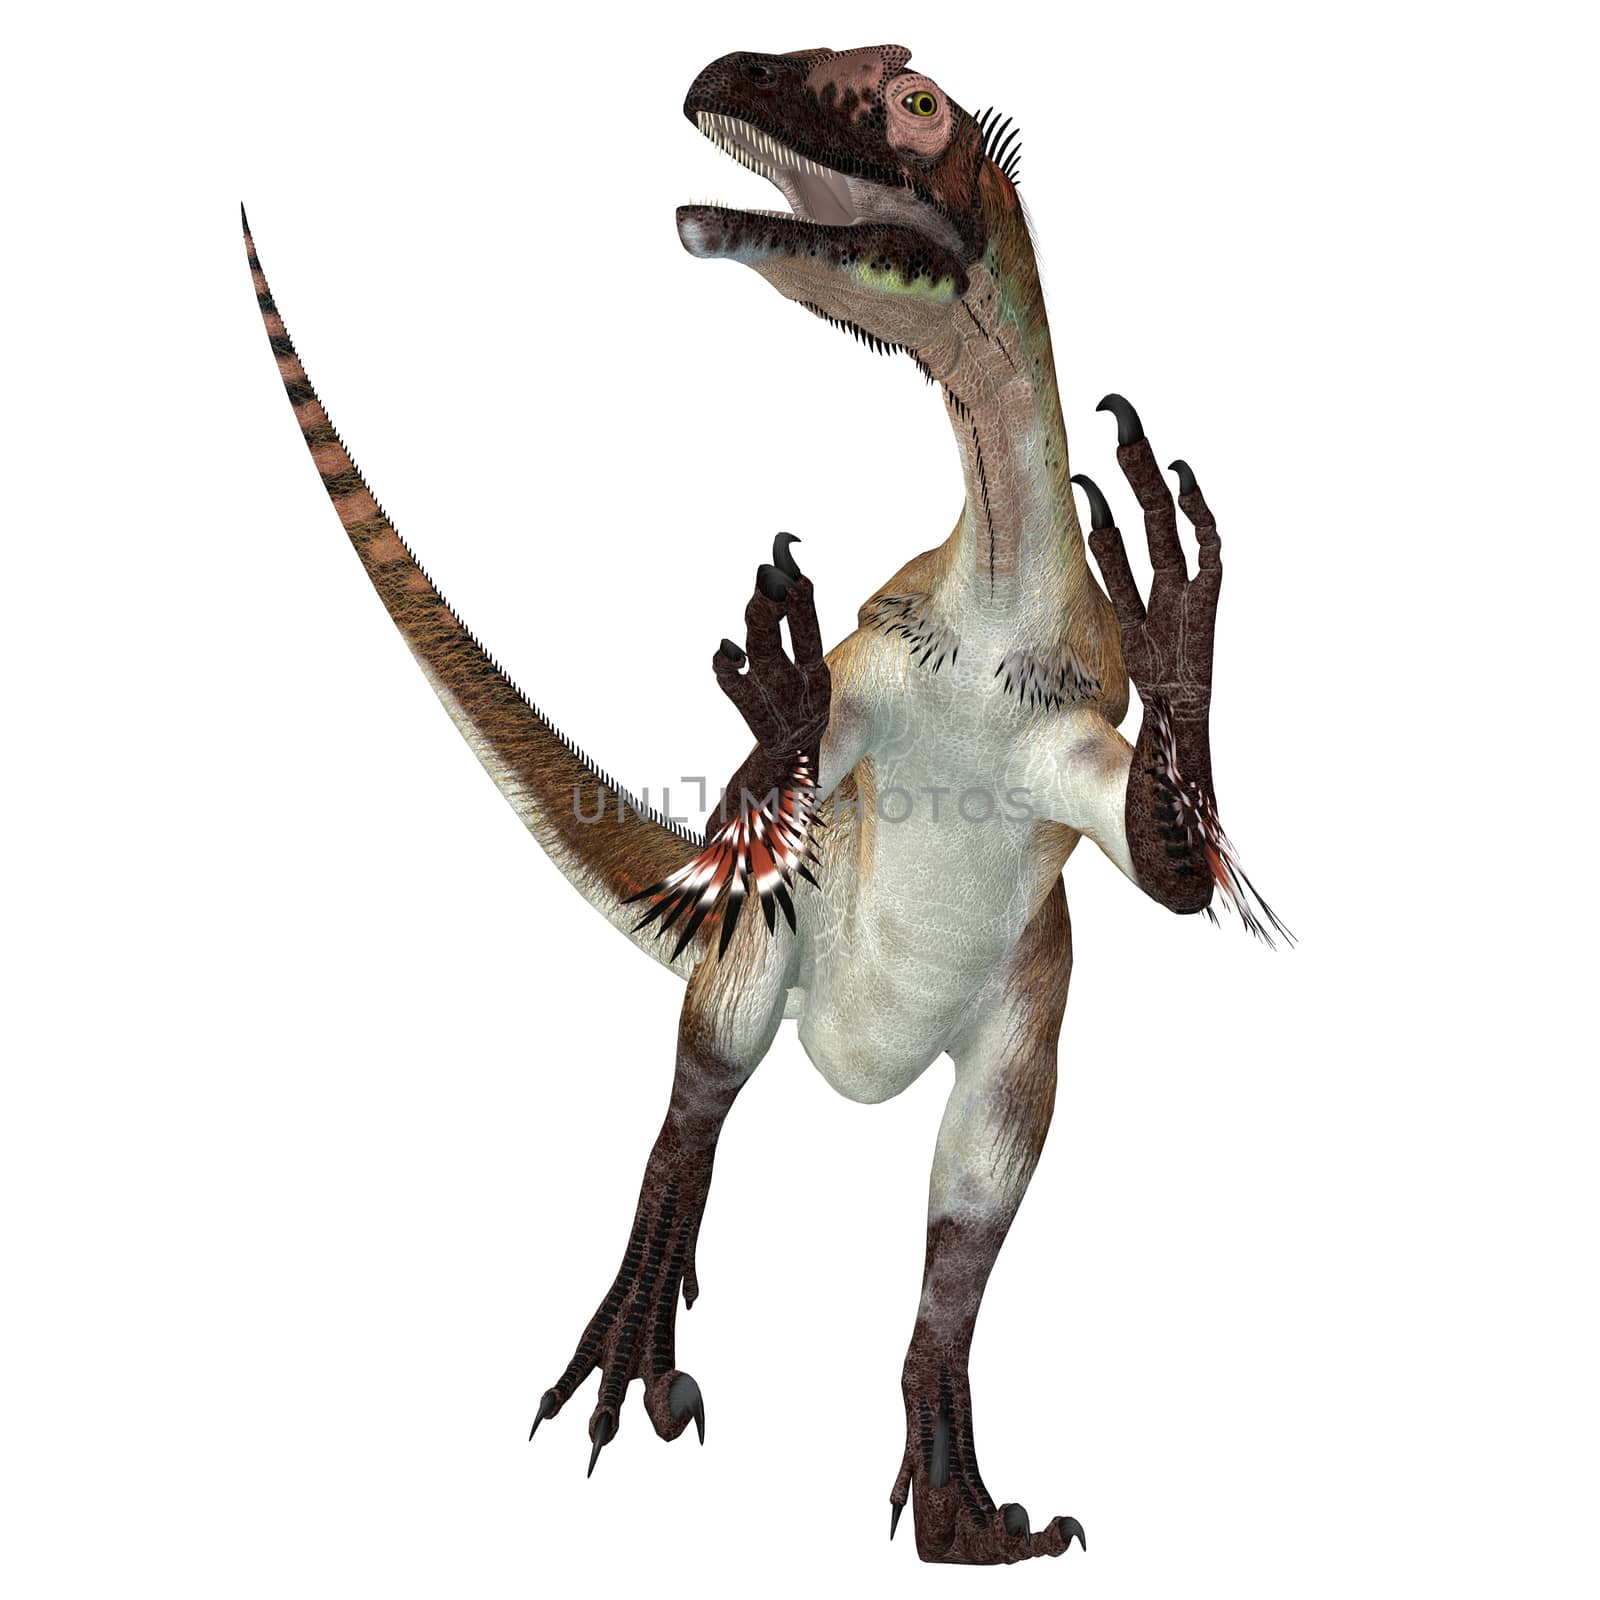 Utahraptor Dinosaur over White by Catmando